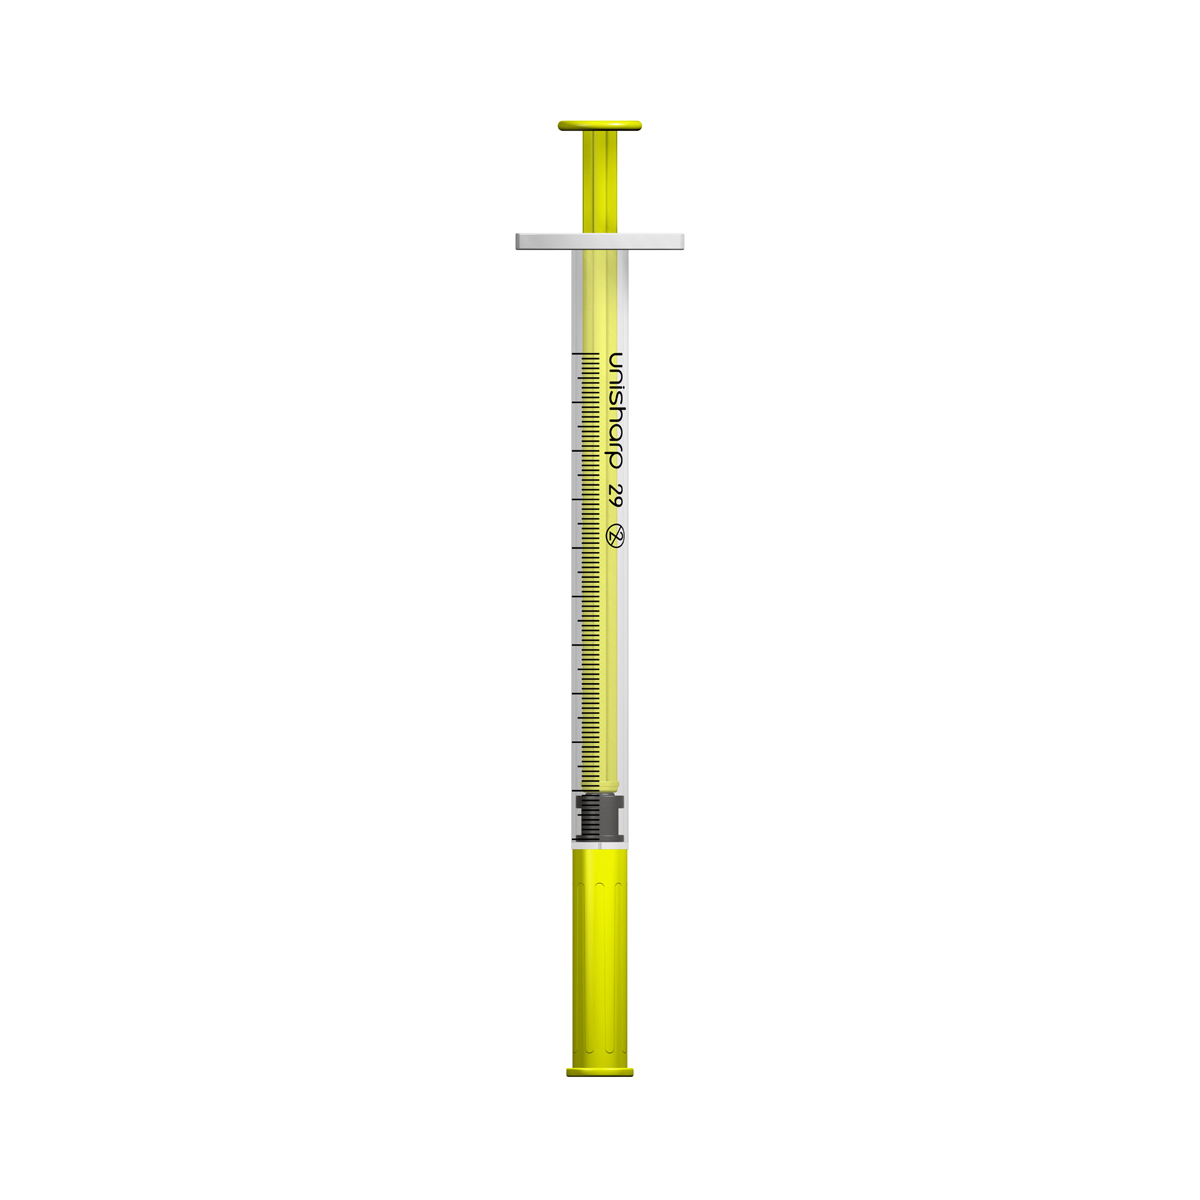 Unisharp 1ml 29G fixed needle syringe: yellow